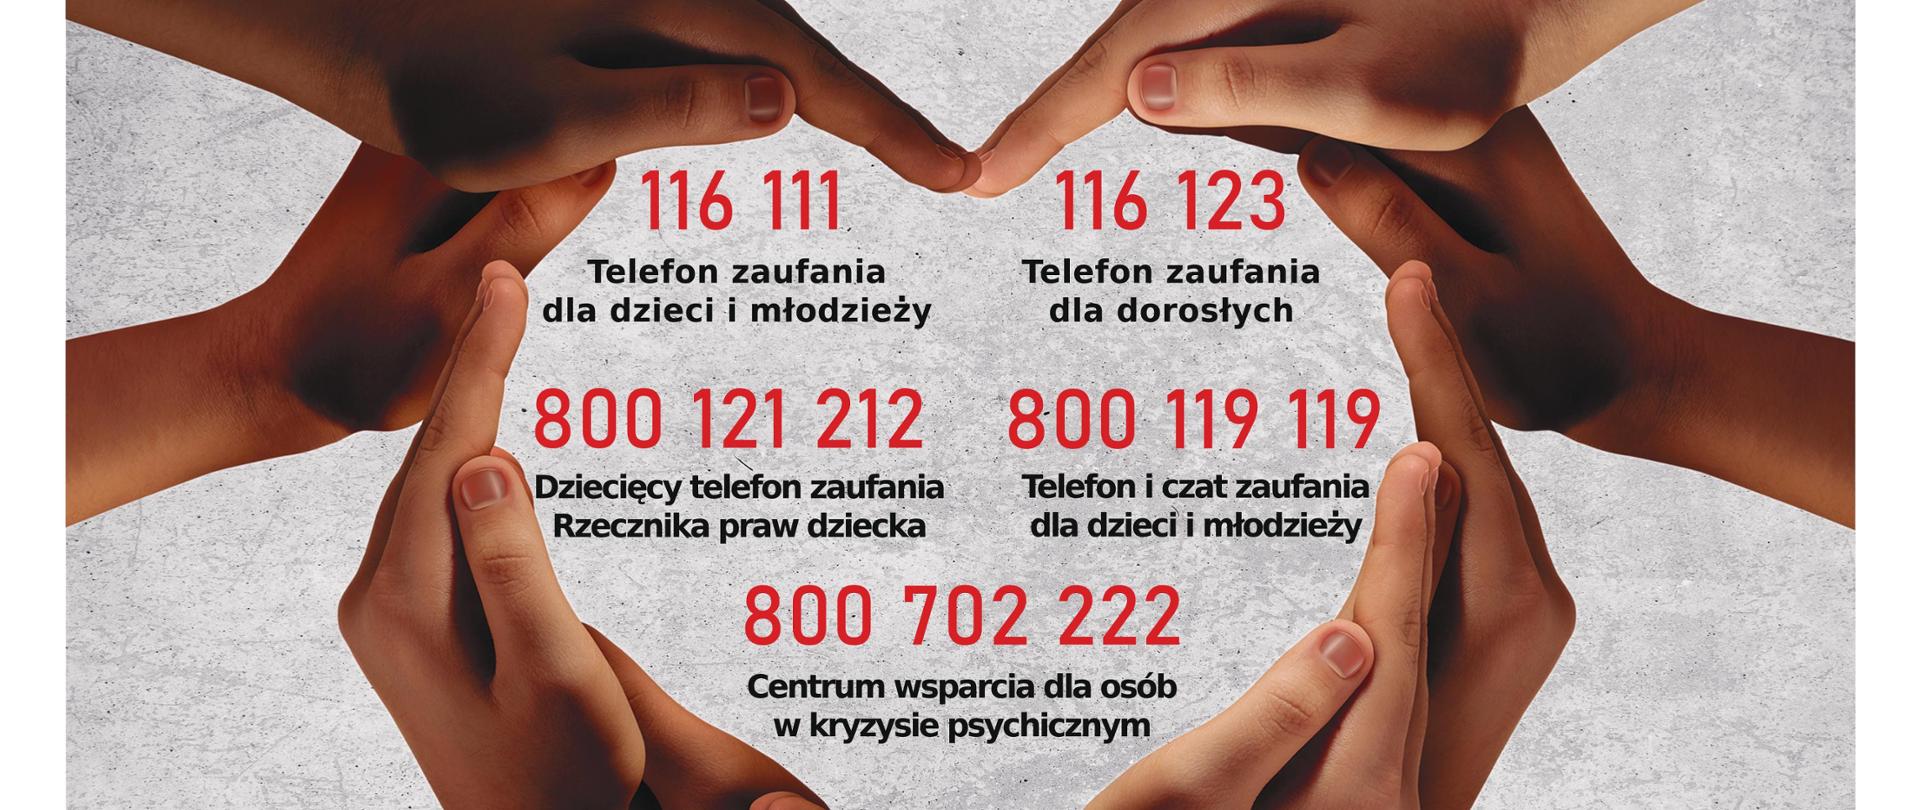 plakat, splecione dłonie i numery telefonów dla dzieci i młodzieży w kryzysie psychicznym